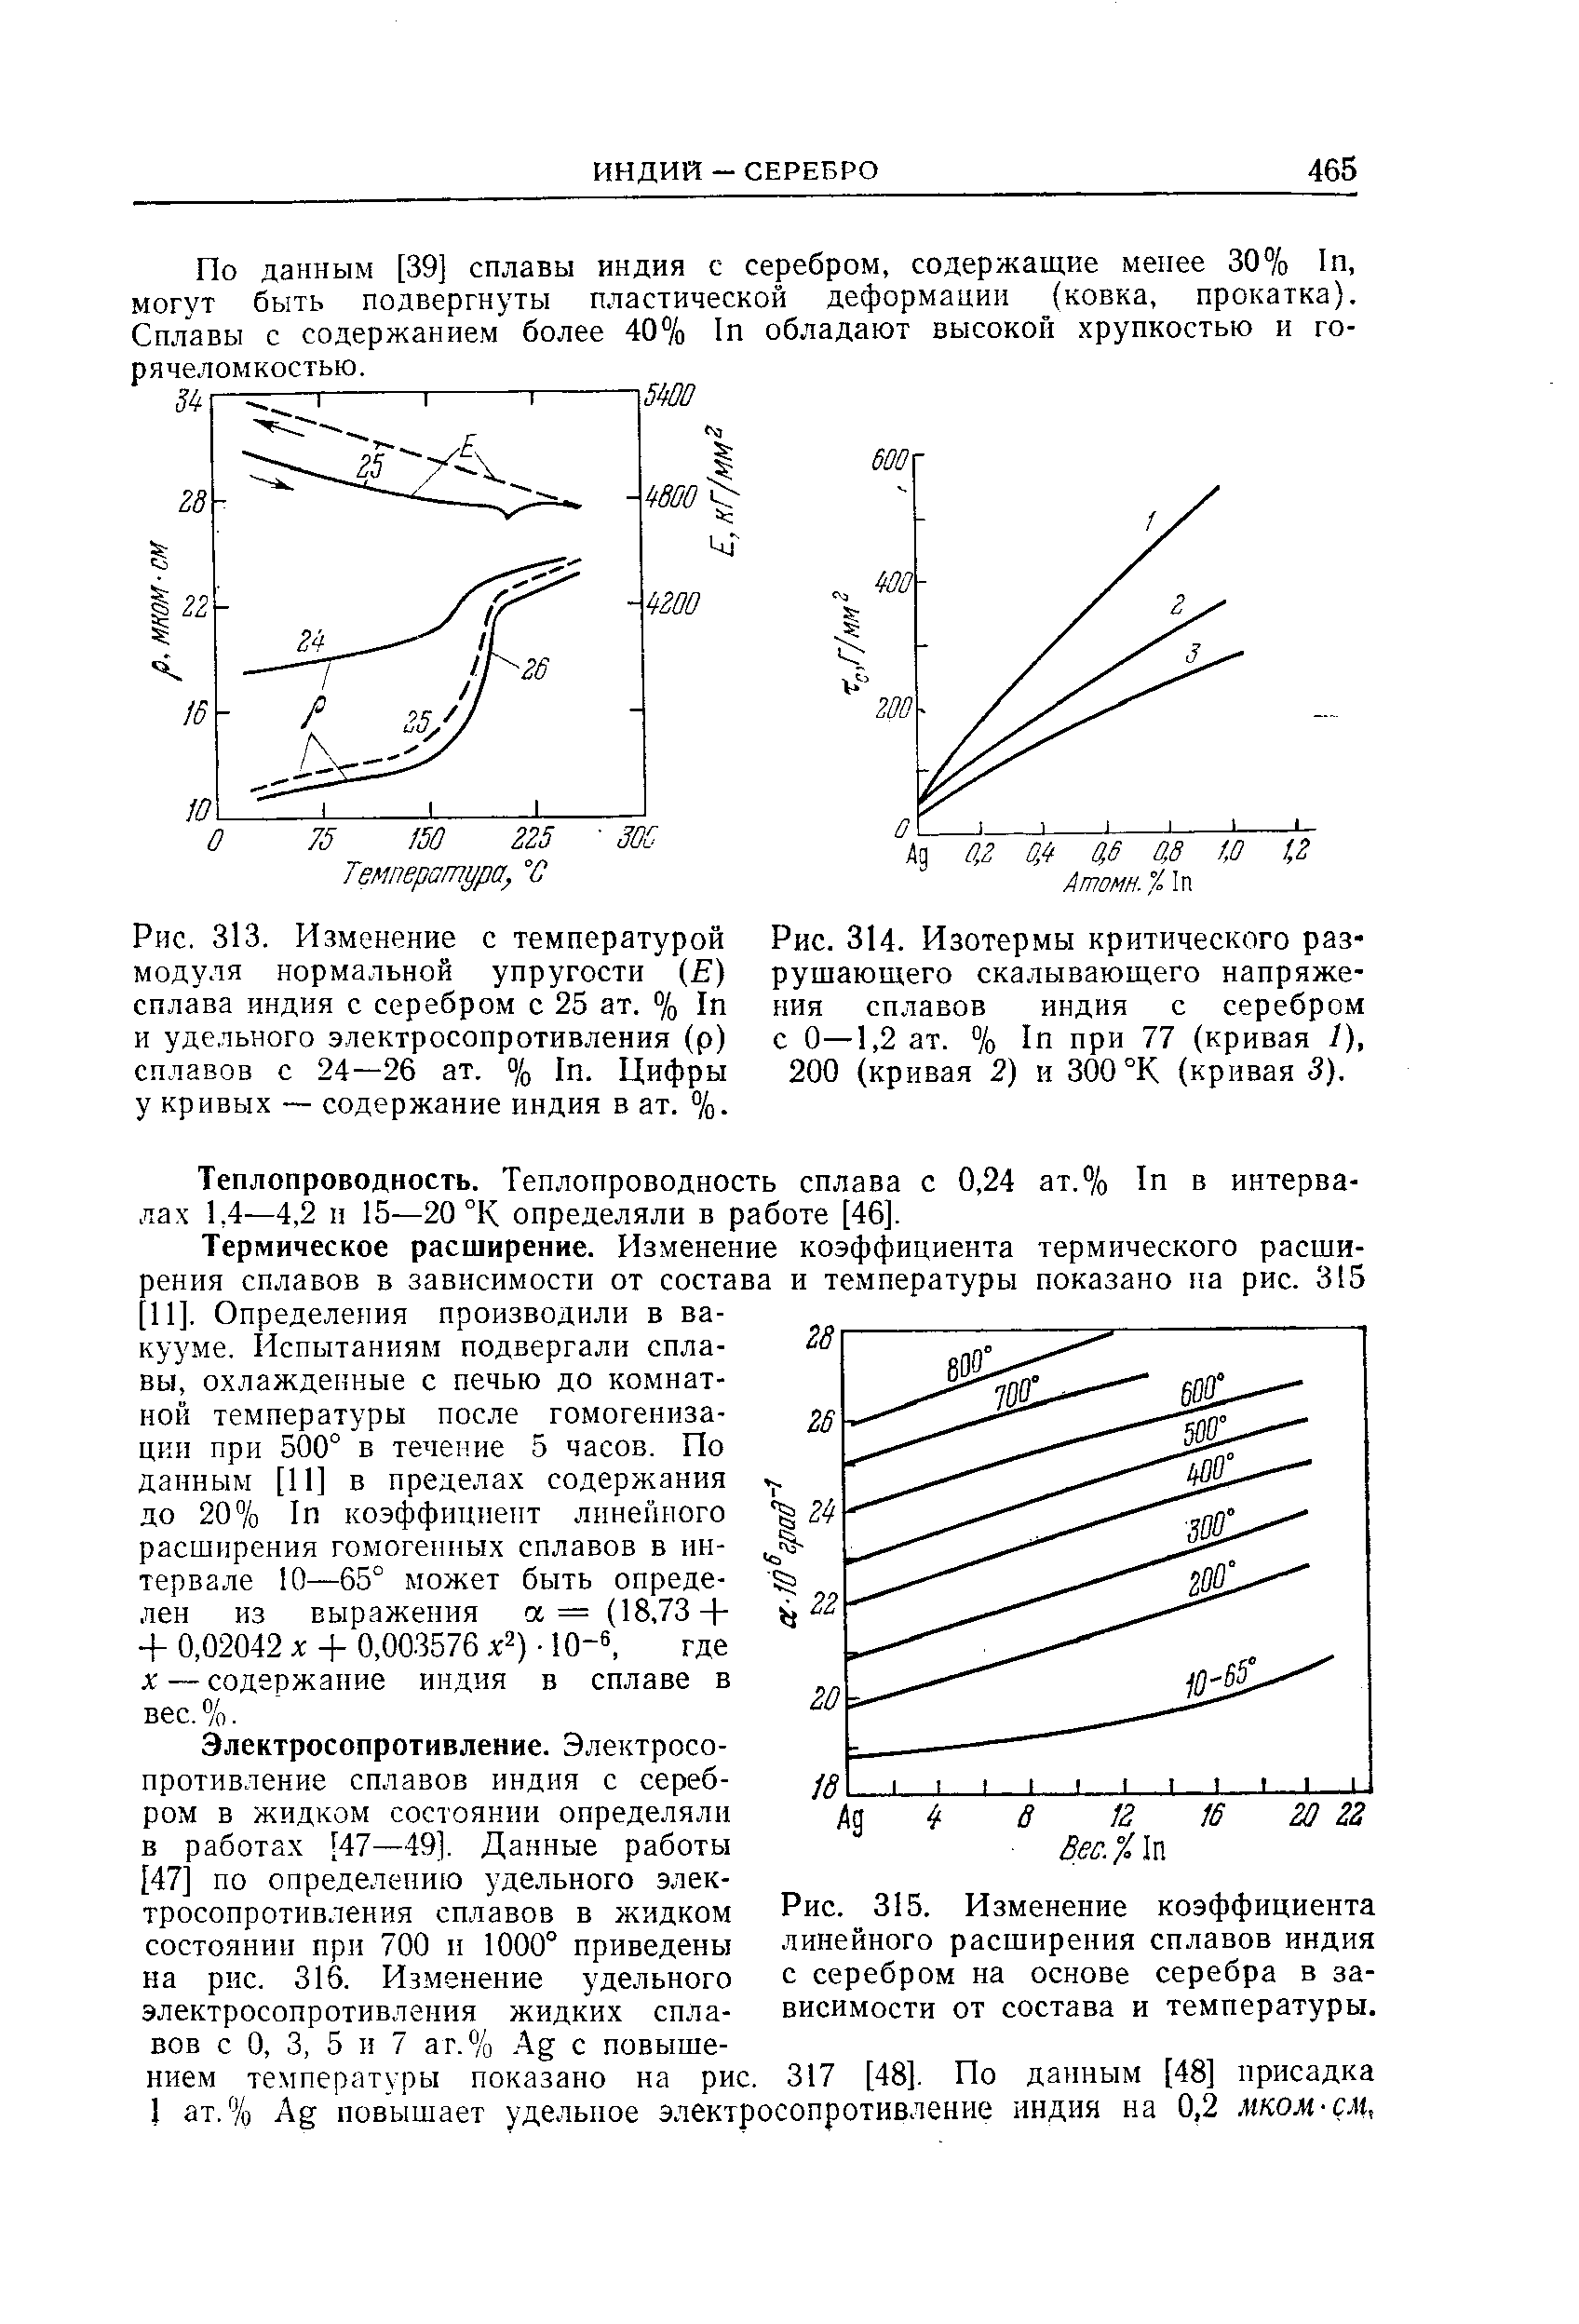 Рис. 314. Изотермы критического разрушающего скалывающего напряжения <a href="/info/189700">сплавов индия</a> с серебром с 0—1,2 ат. %) 1п при 77 (кривая /), 200 (кривая 2) и 300 °К (кривая 3).
